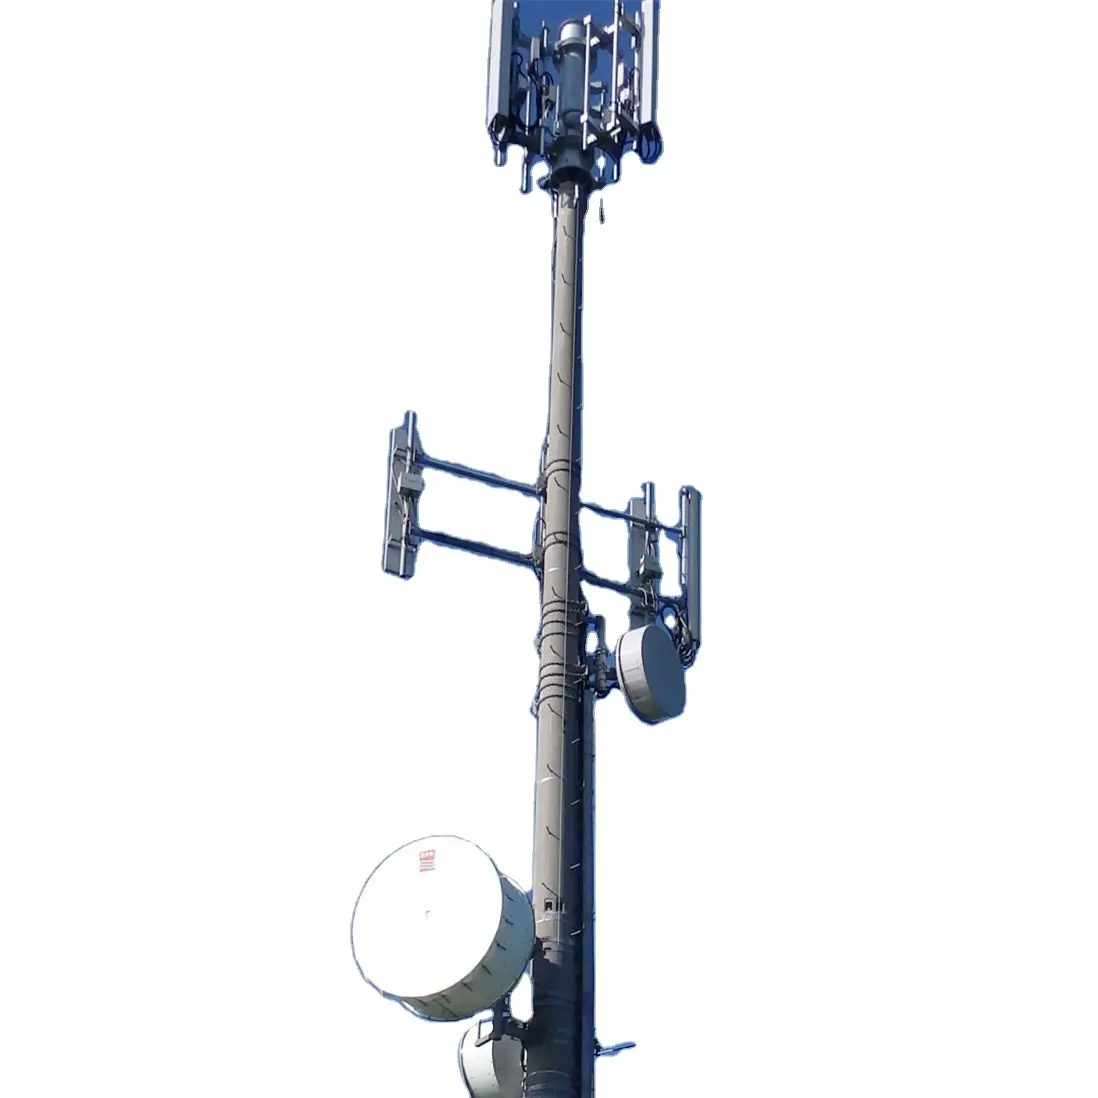 Восьмиугольный гальванизированный стальной cb-радиосвязь, спутник cdma, беспроводной телефон 4g, телекоммуникационные башни